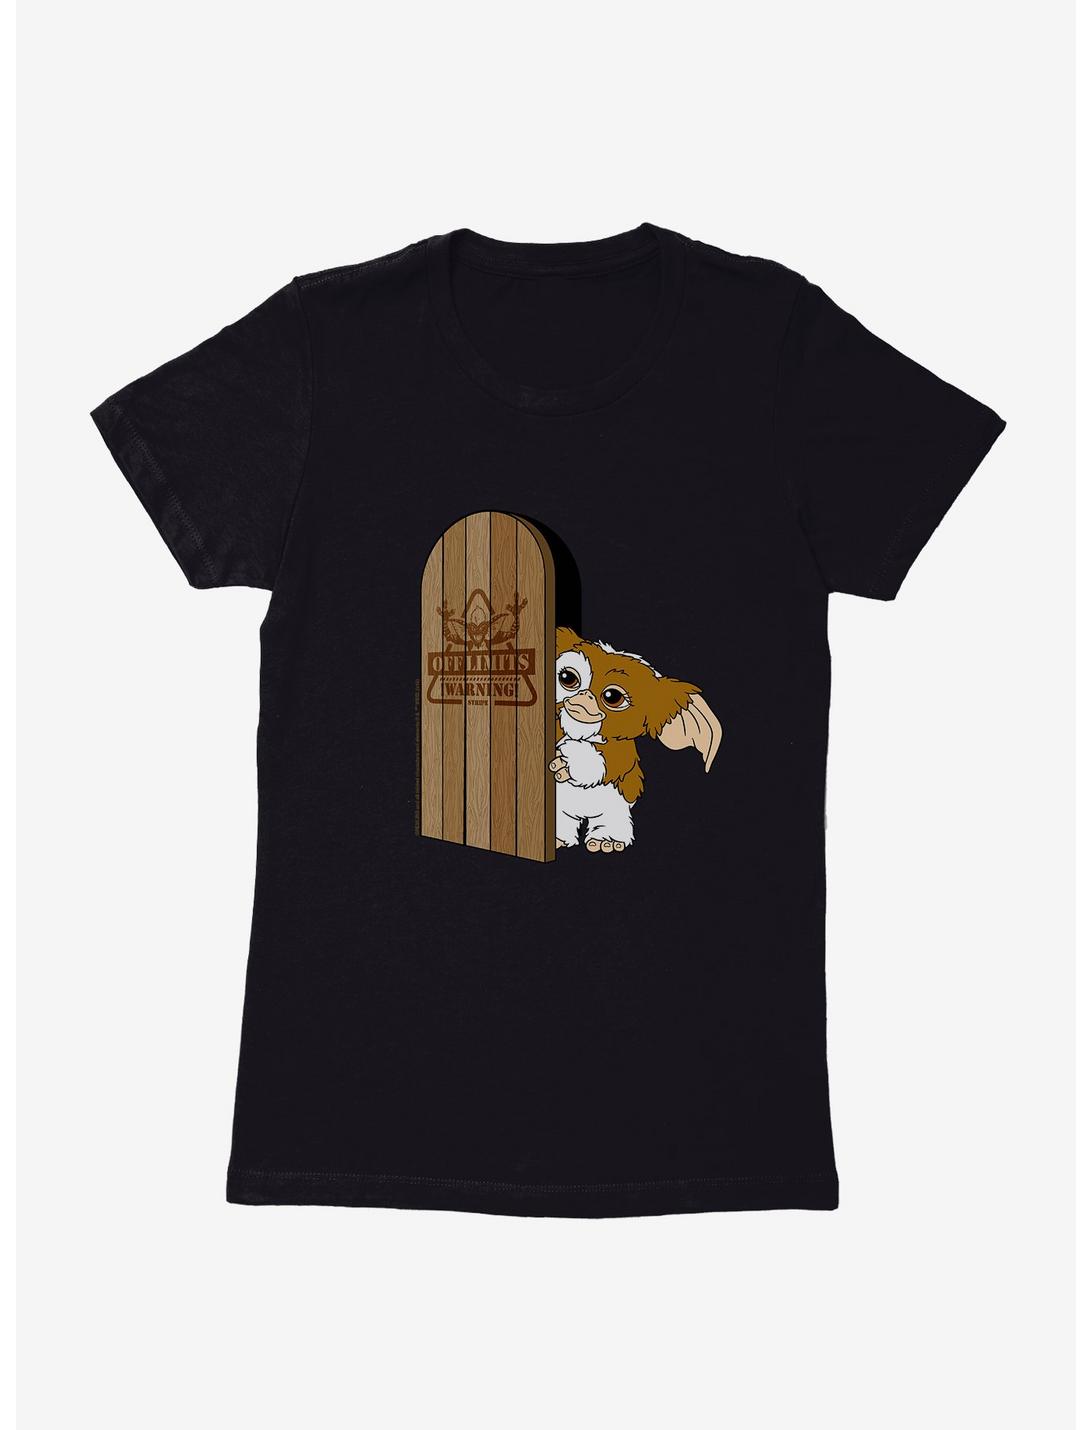 Gremlins Gizmo Off Limits Door Womens T-Shirt, BLACK, hi-res